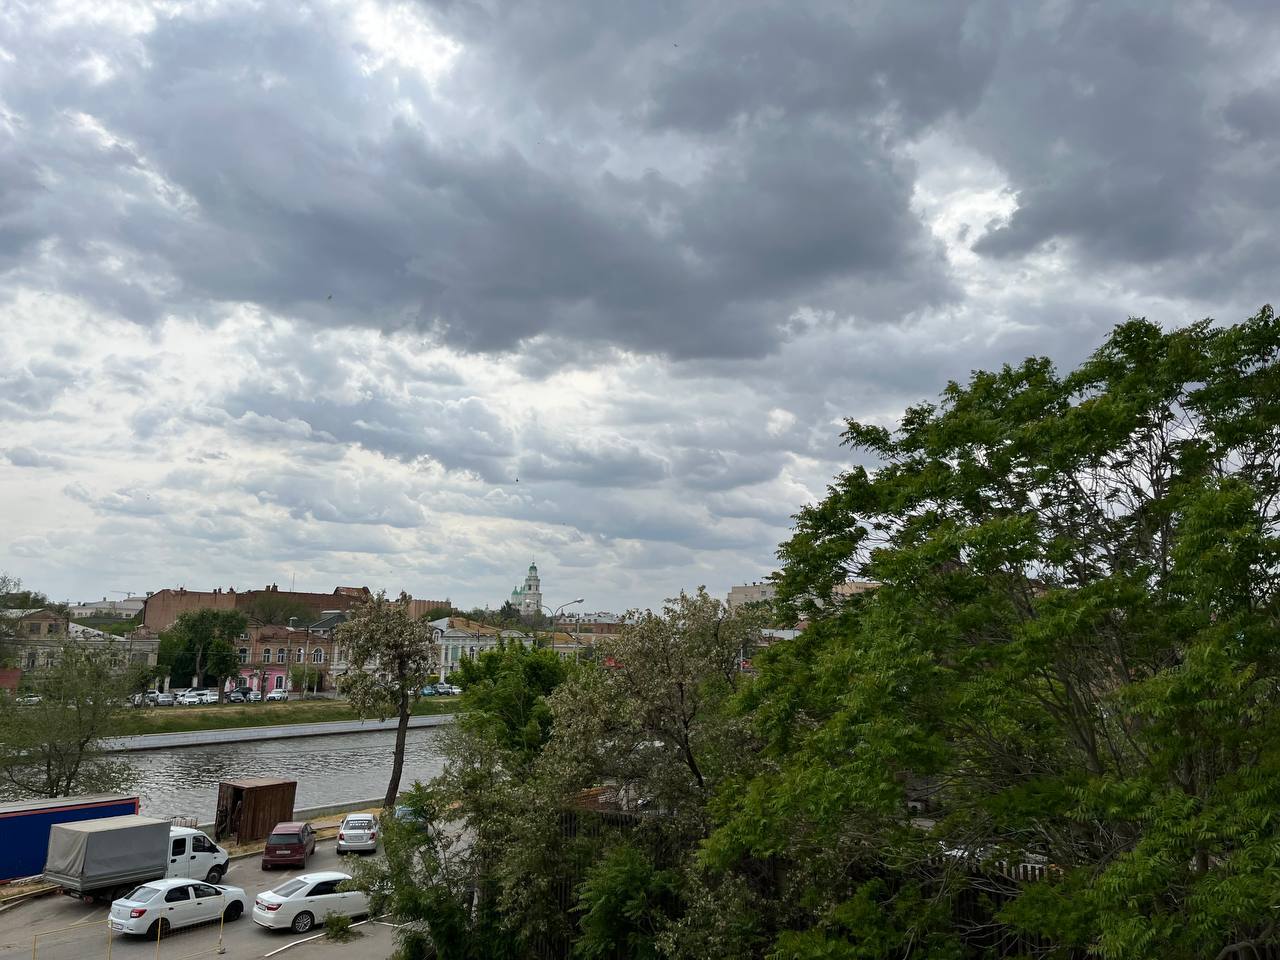 Ветер крепчает: в Астрахани сегодня ожидается ухудшение погоды 